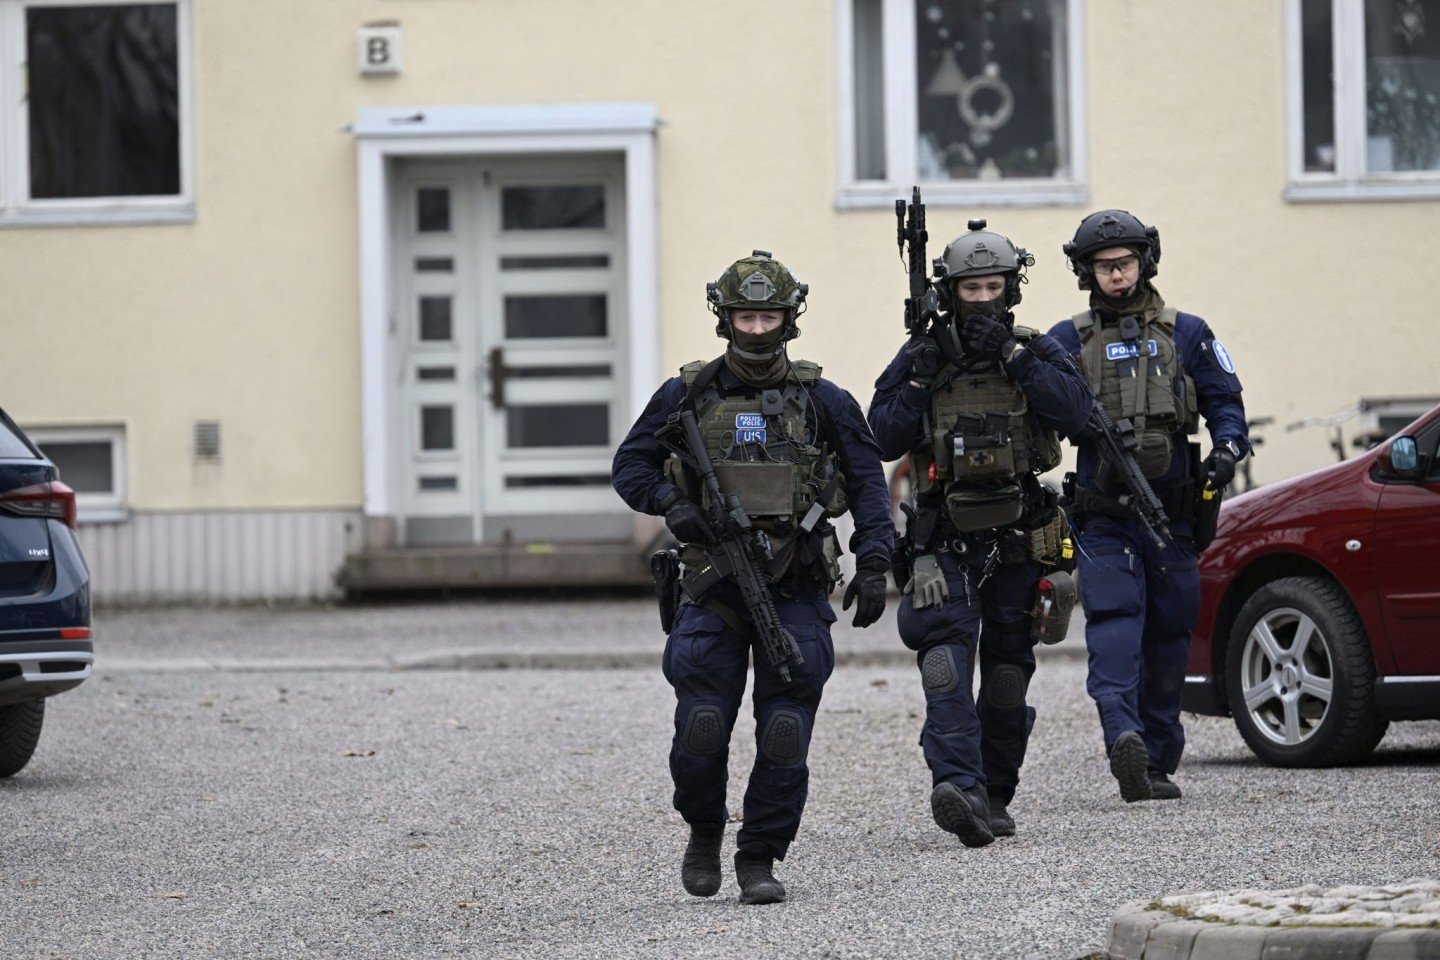 Bewaffnete Polizisten gehen in der Nähe der Viertola-Schule. Bei dem Vorfall an einer Grundschule in der finnischen Stadt Vantaa nördlich von Helsinki sind Kinder verletzt worden. Ein zwö...